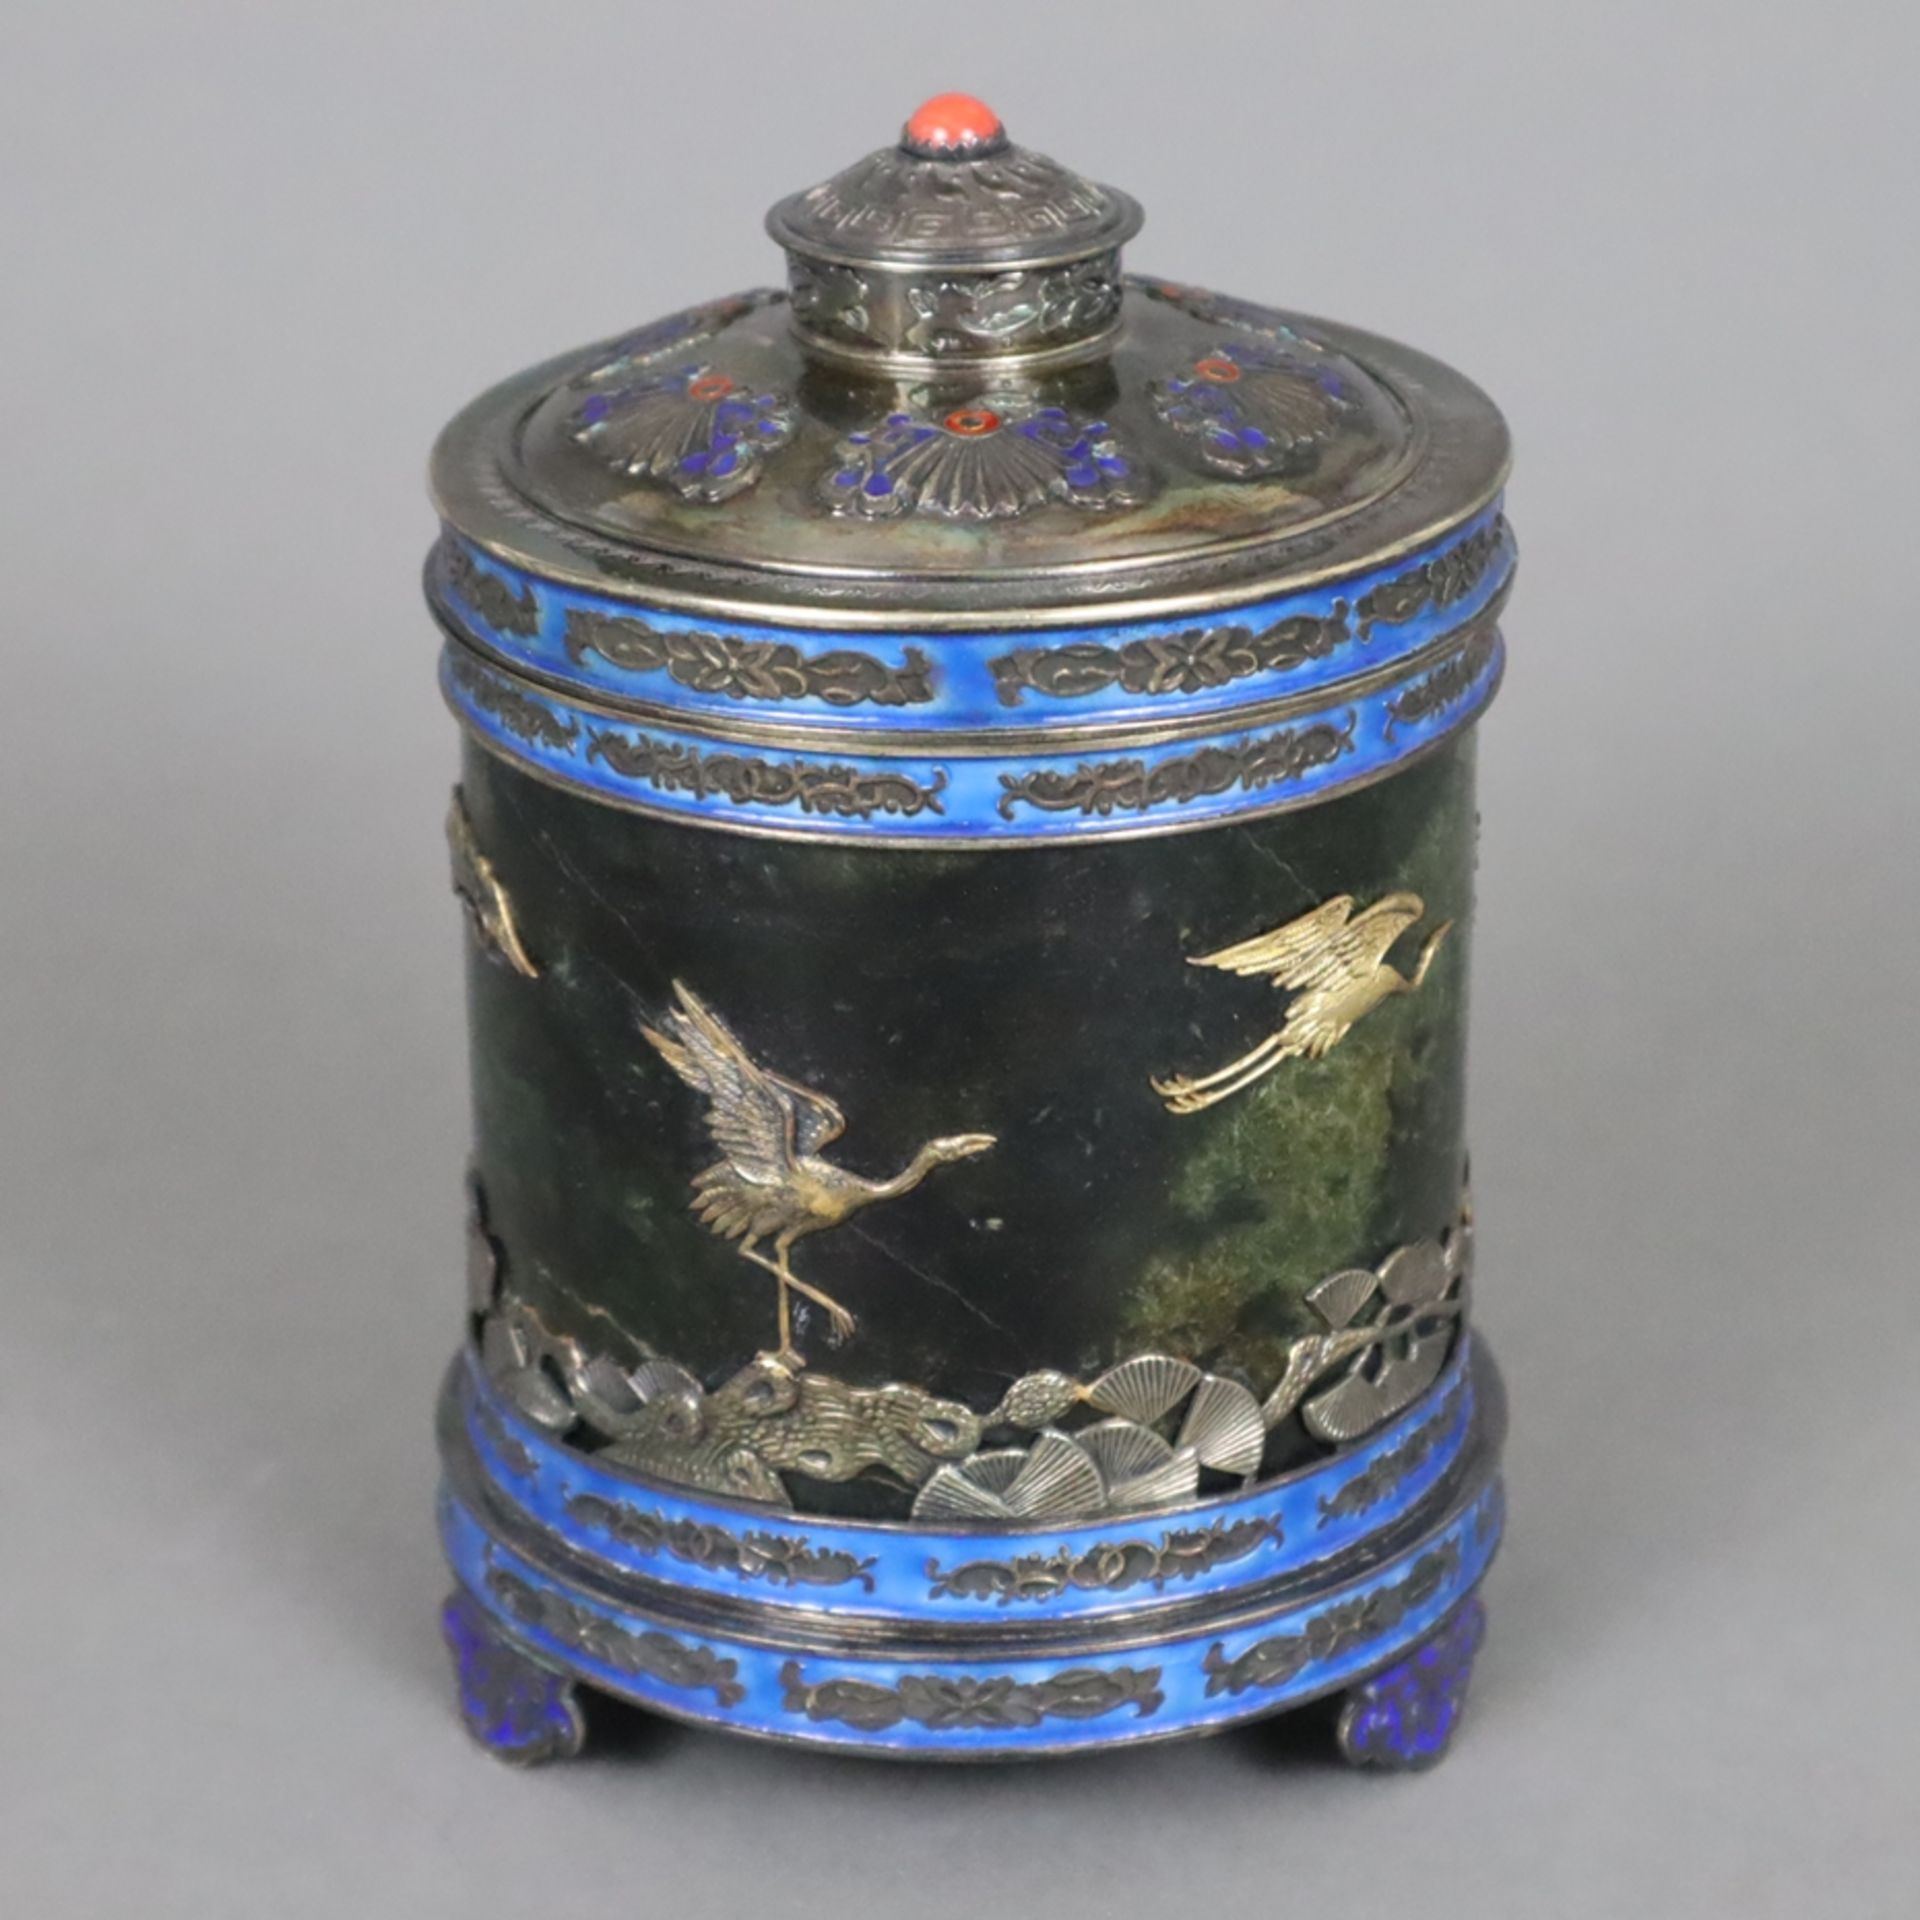 Deckeldose - China 20.Jh., Silber/Jade/Email, auf drei Füßen Zylinderform mit Stülpdeckel, Wandung